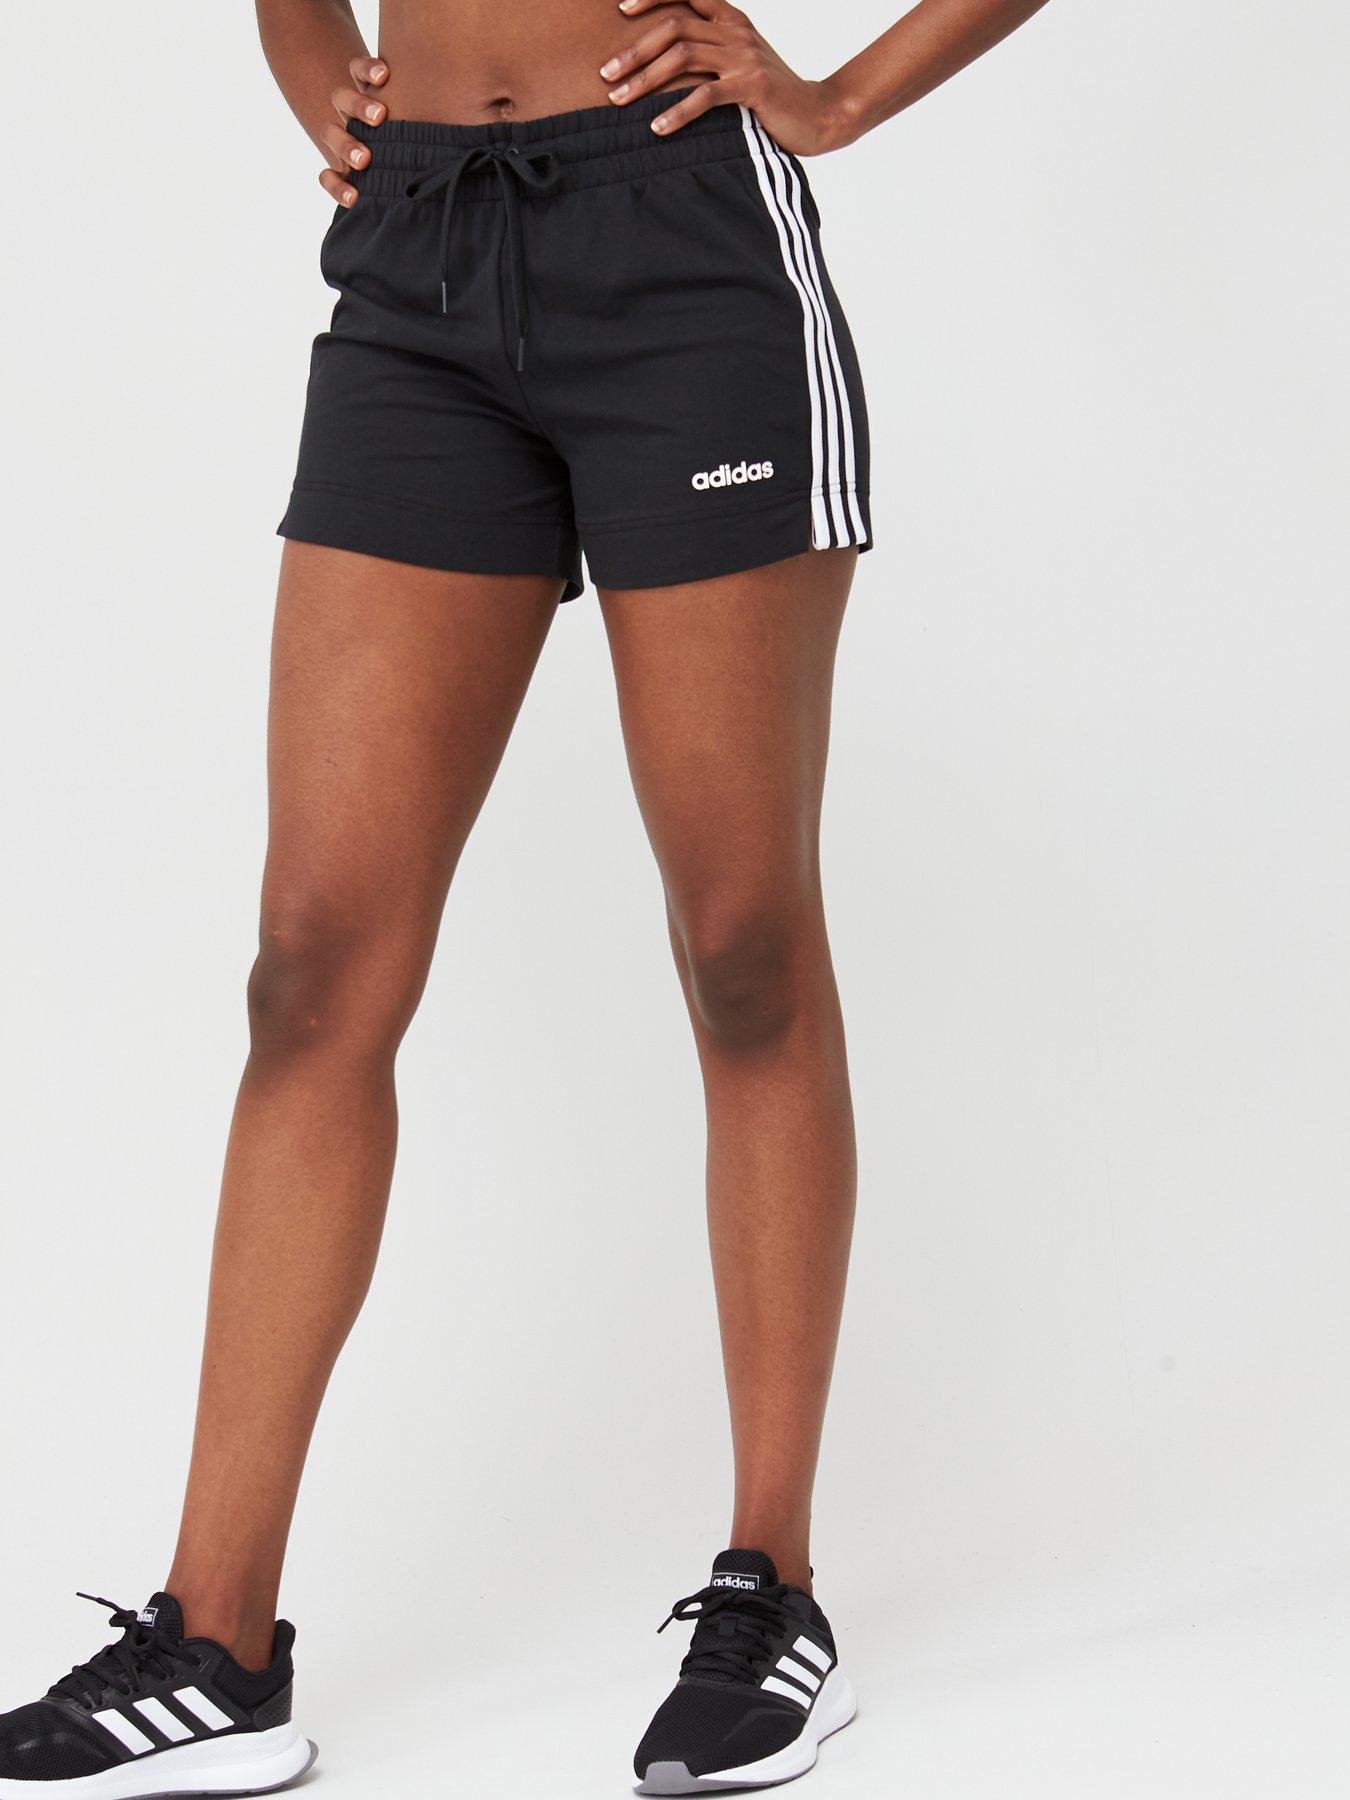 adidas gym shorts womens